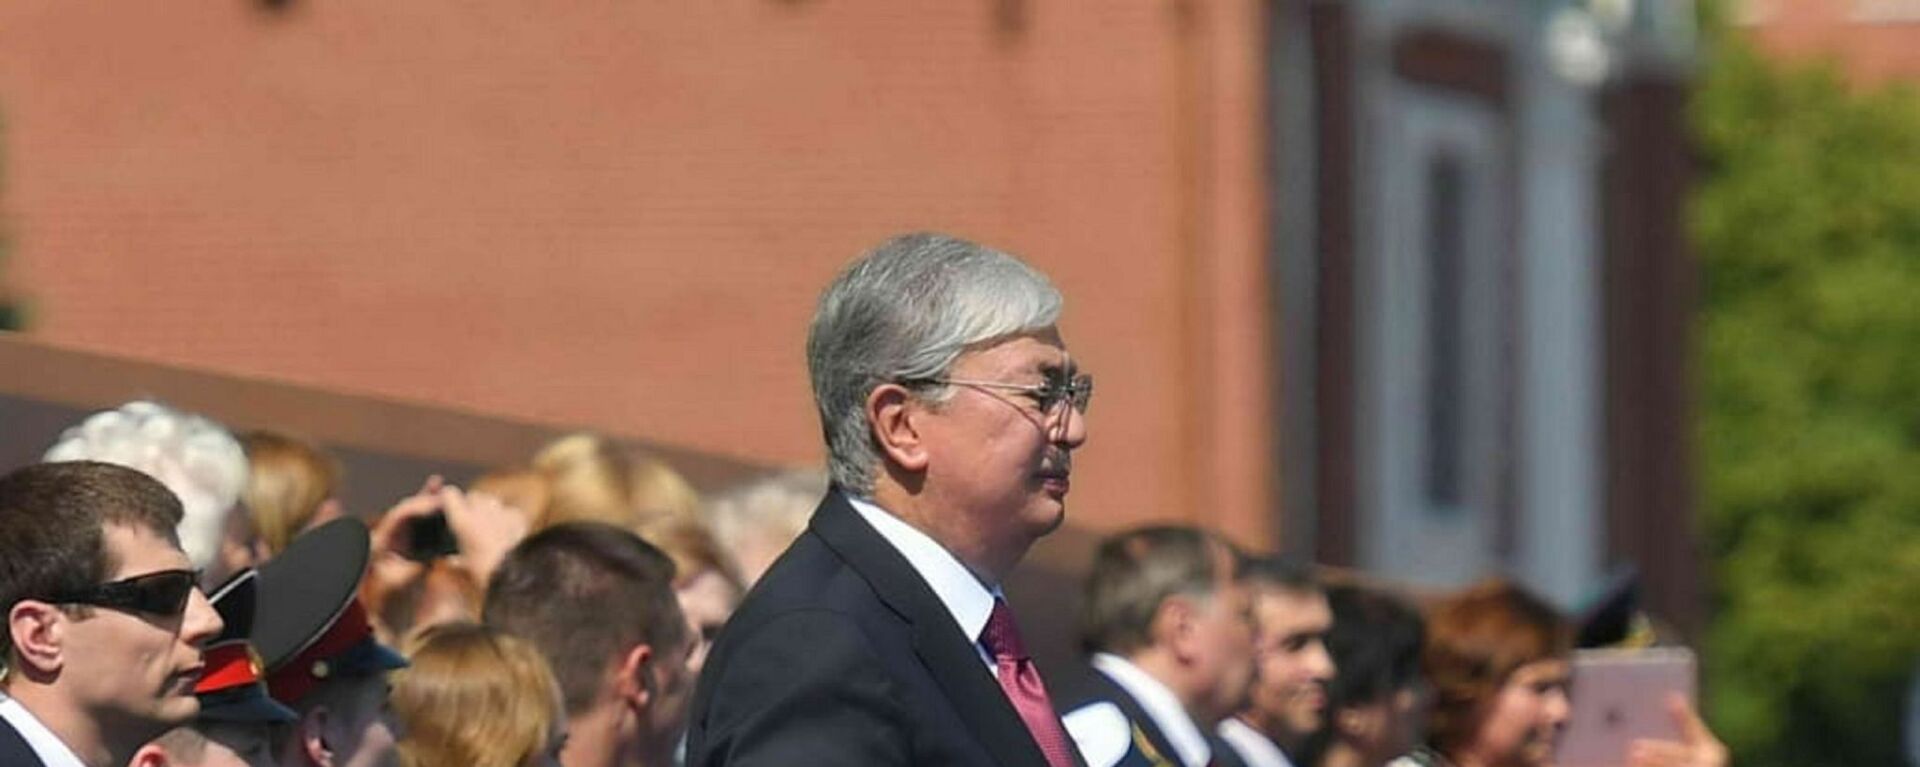 Президент Казахстана посетил военный парад по случаю 75-летия Победы - Sputnik Казахстан, 1920, 24.06.2020